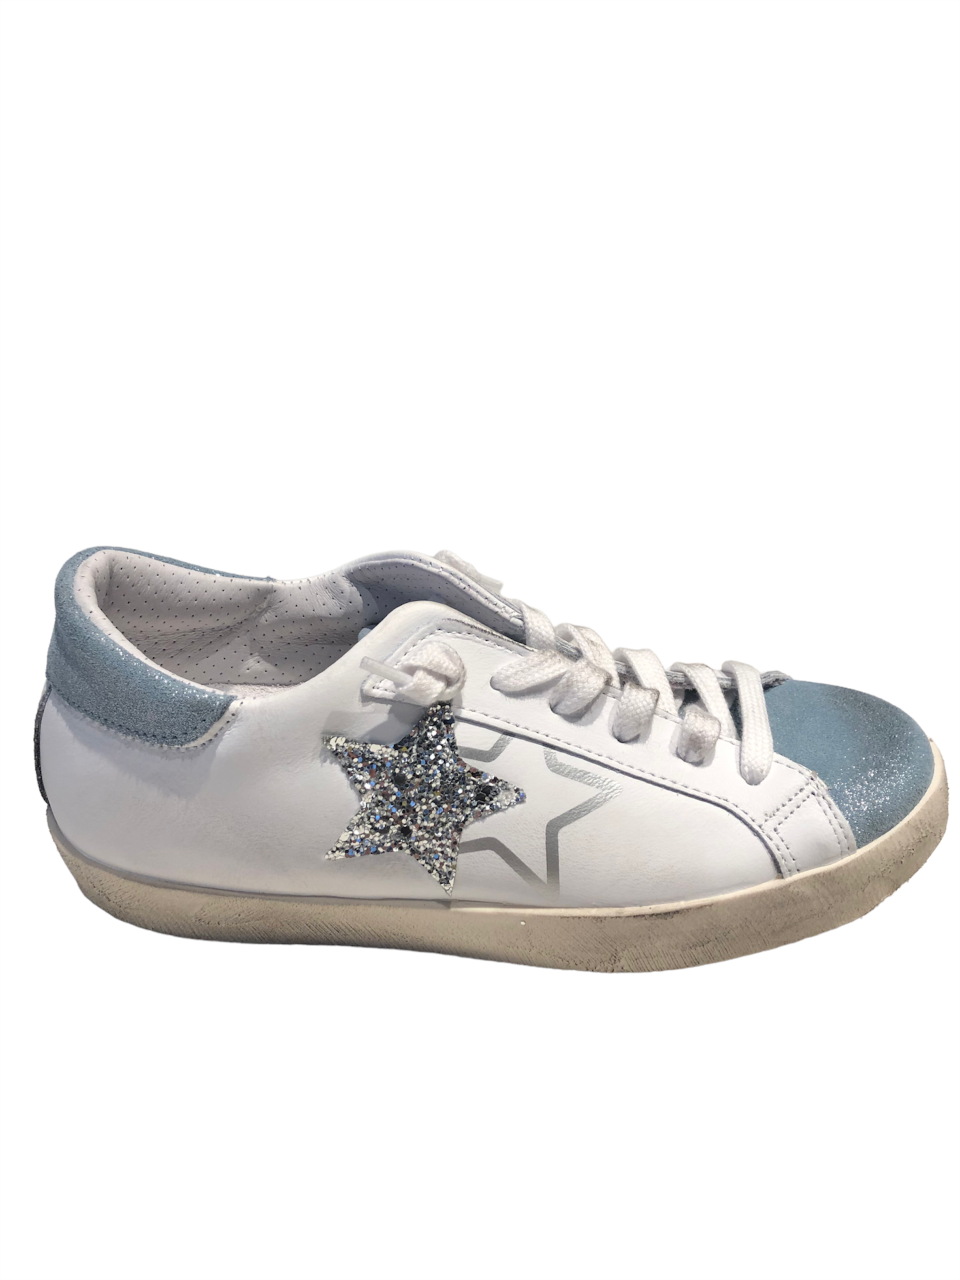 Sneakers in pelle bianca con dettagli in suede azzurro glitterato argento